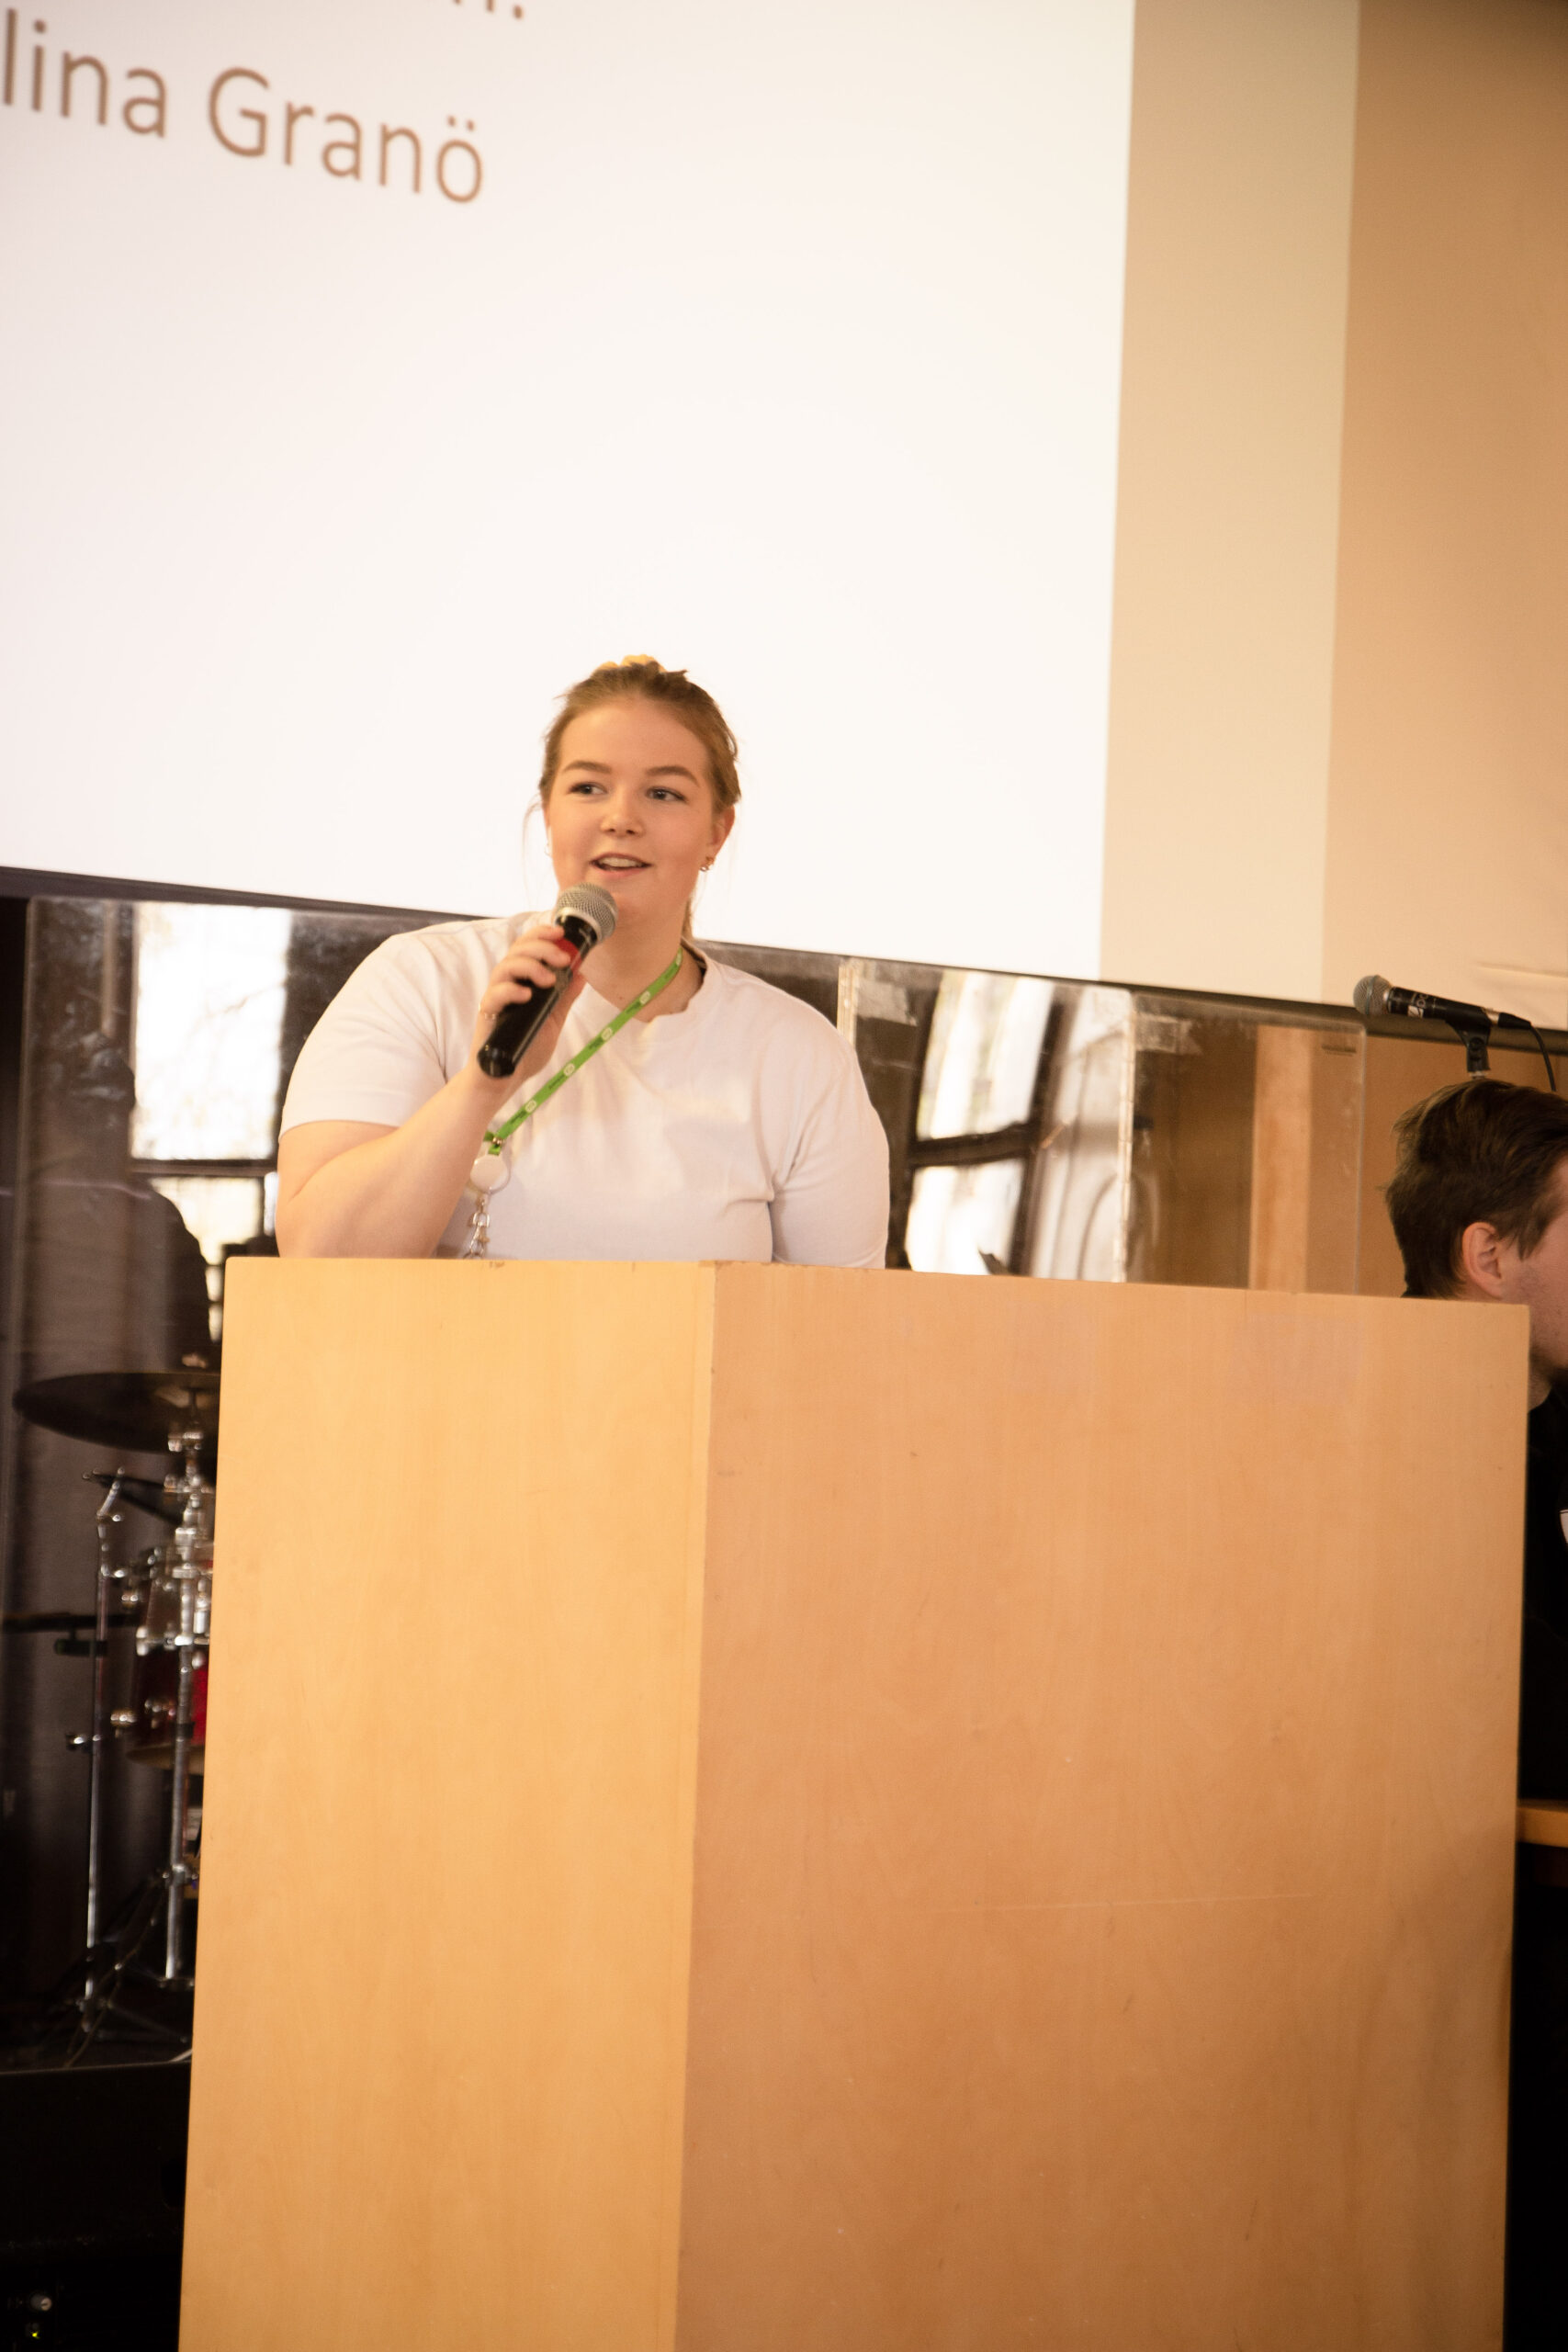 Ung kvinna med ljus skjorta talar i mikrofon från en talarstol.